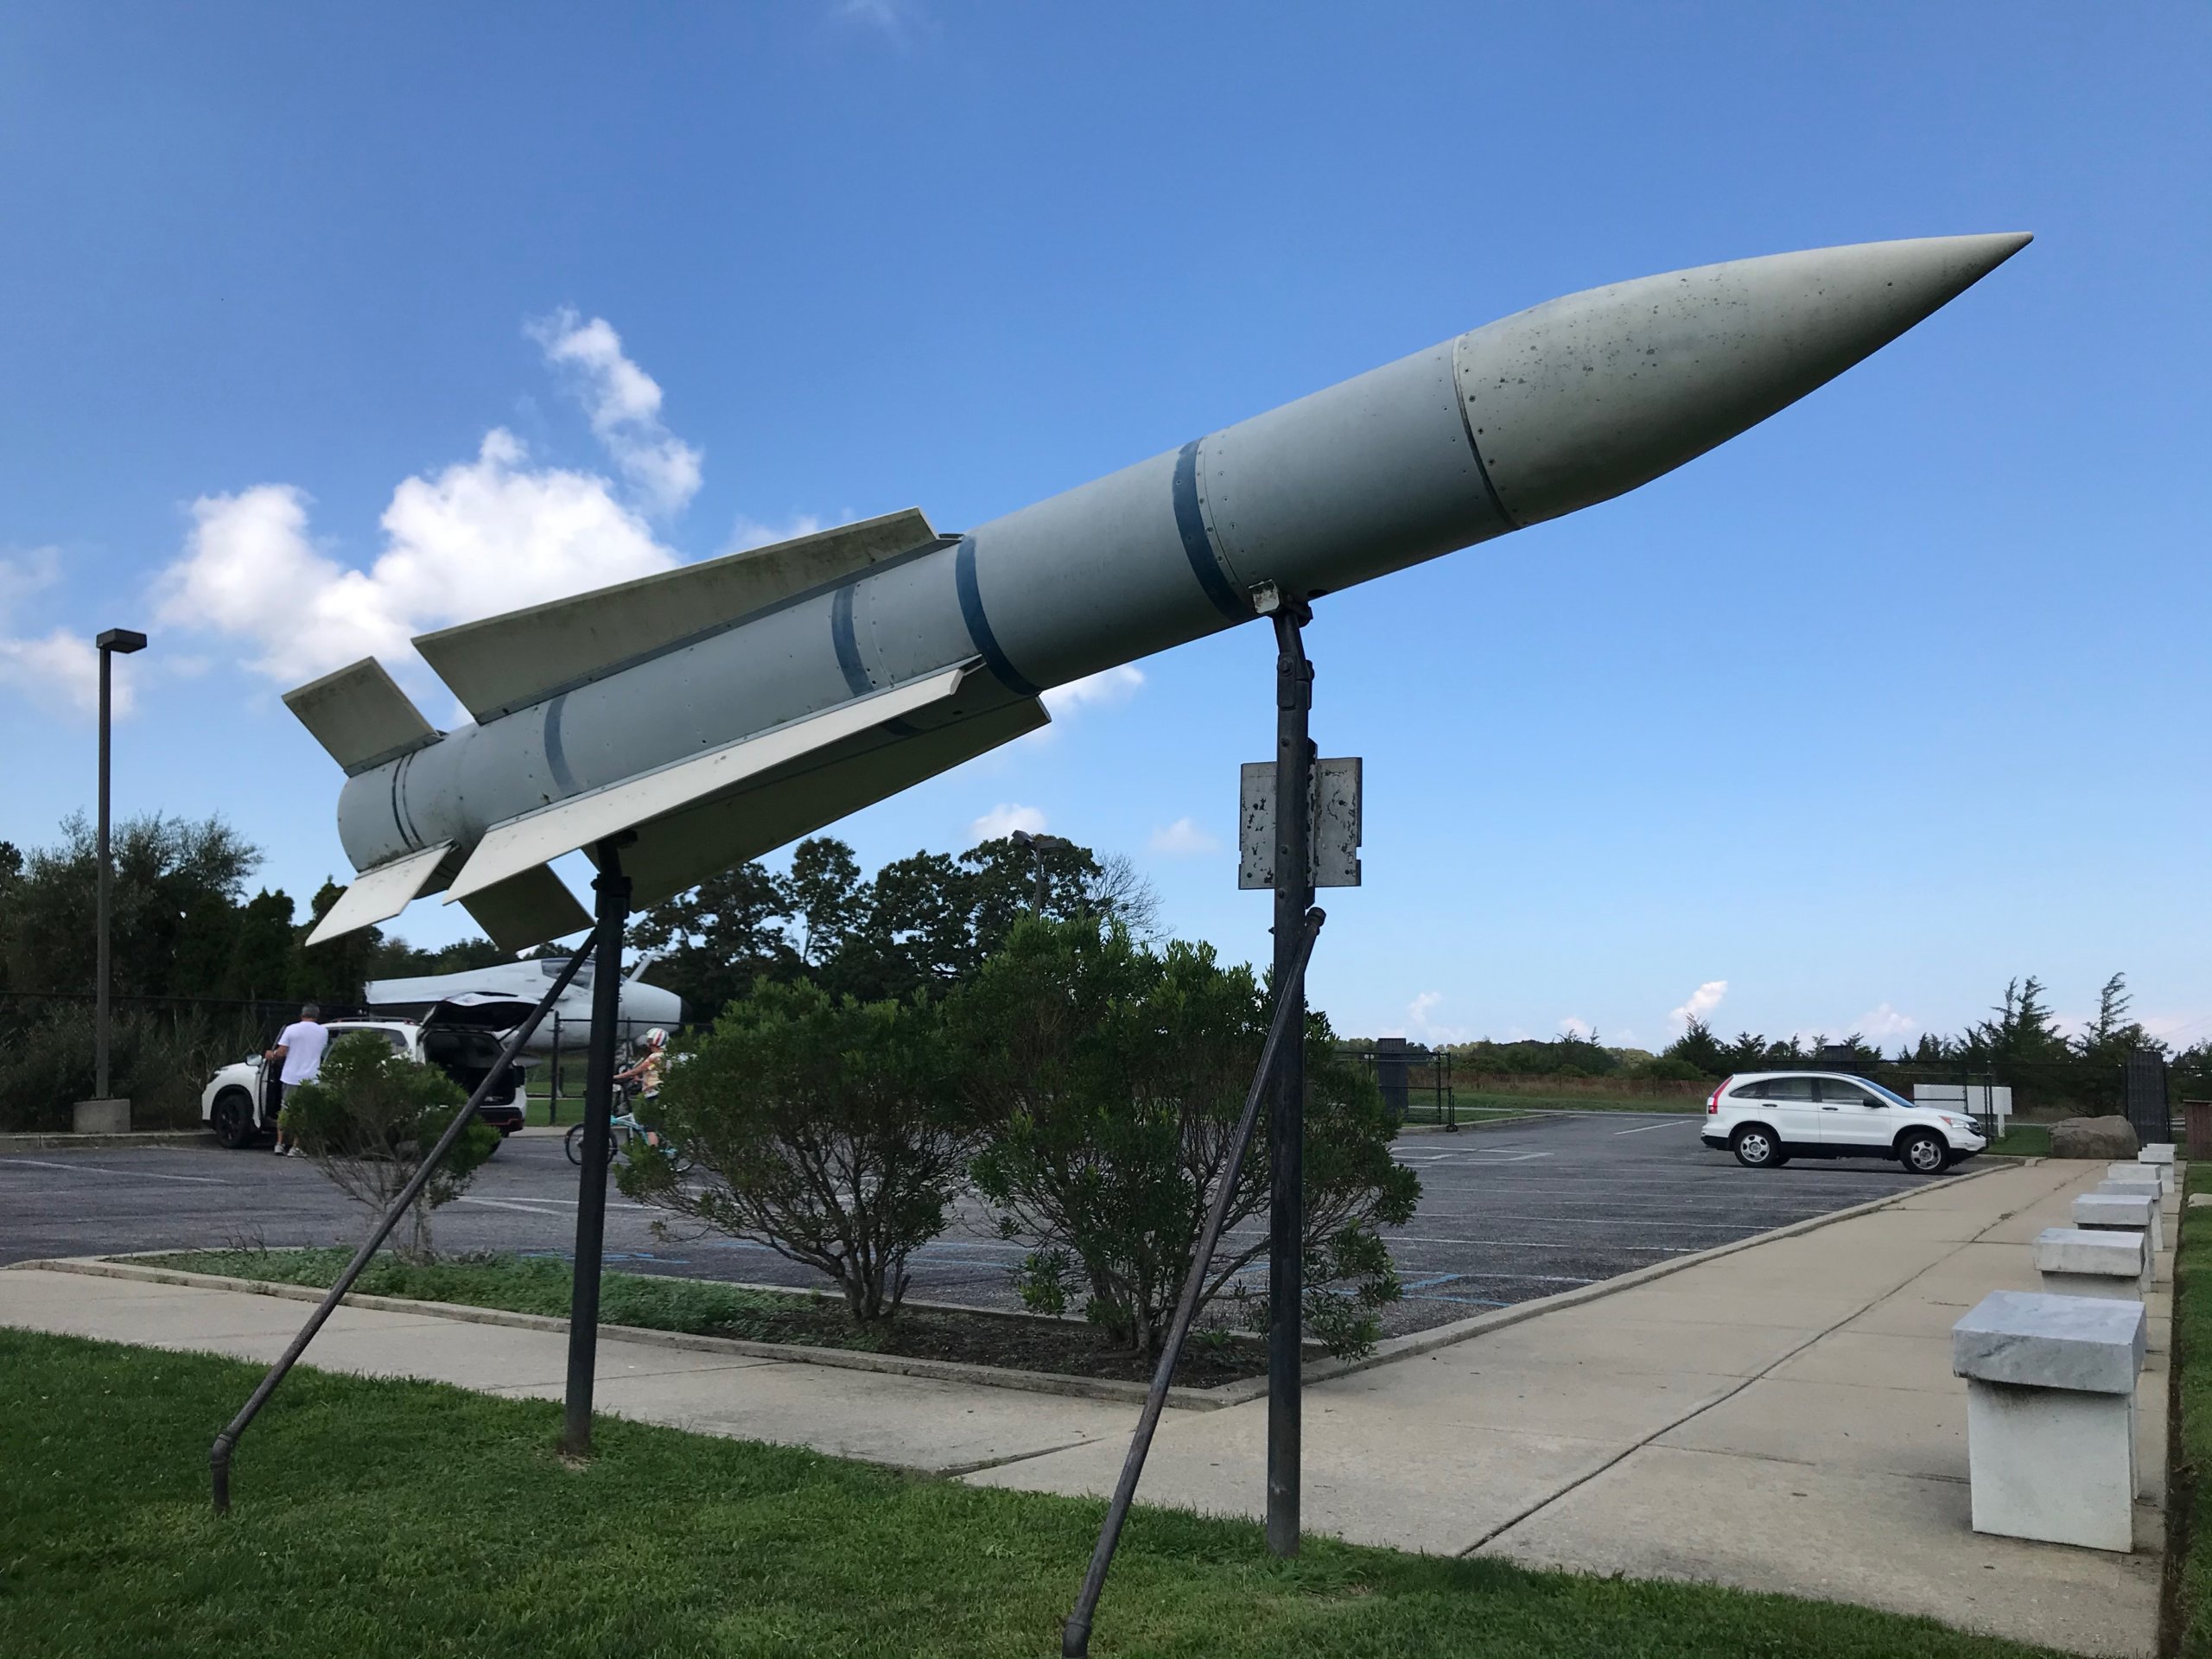 Hughes AIM-54A Phoenix long range air-to-air missile at Grumman Memorial Park in Calverton